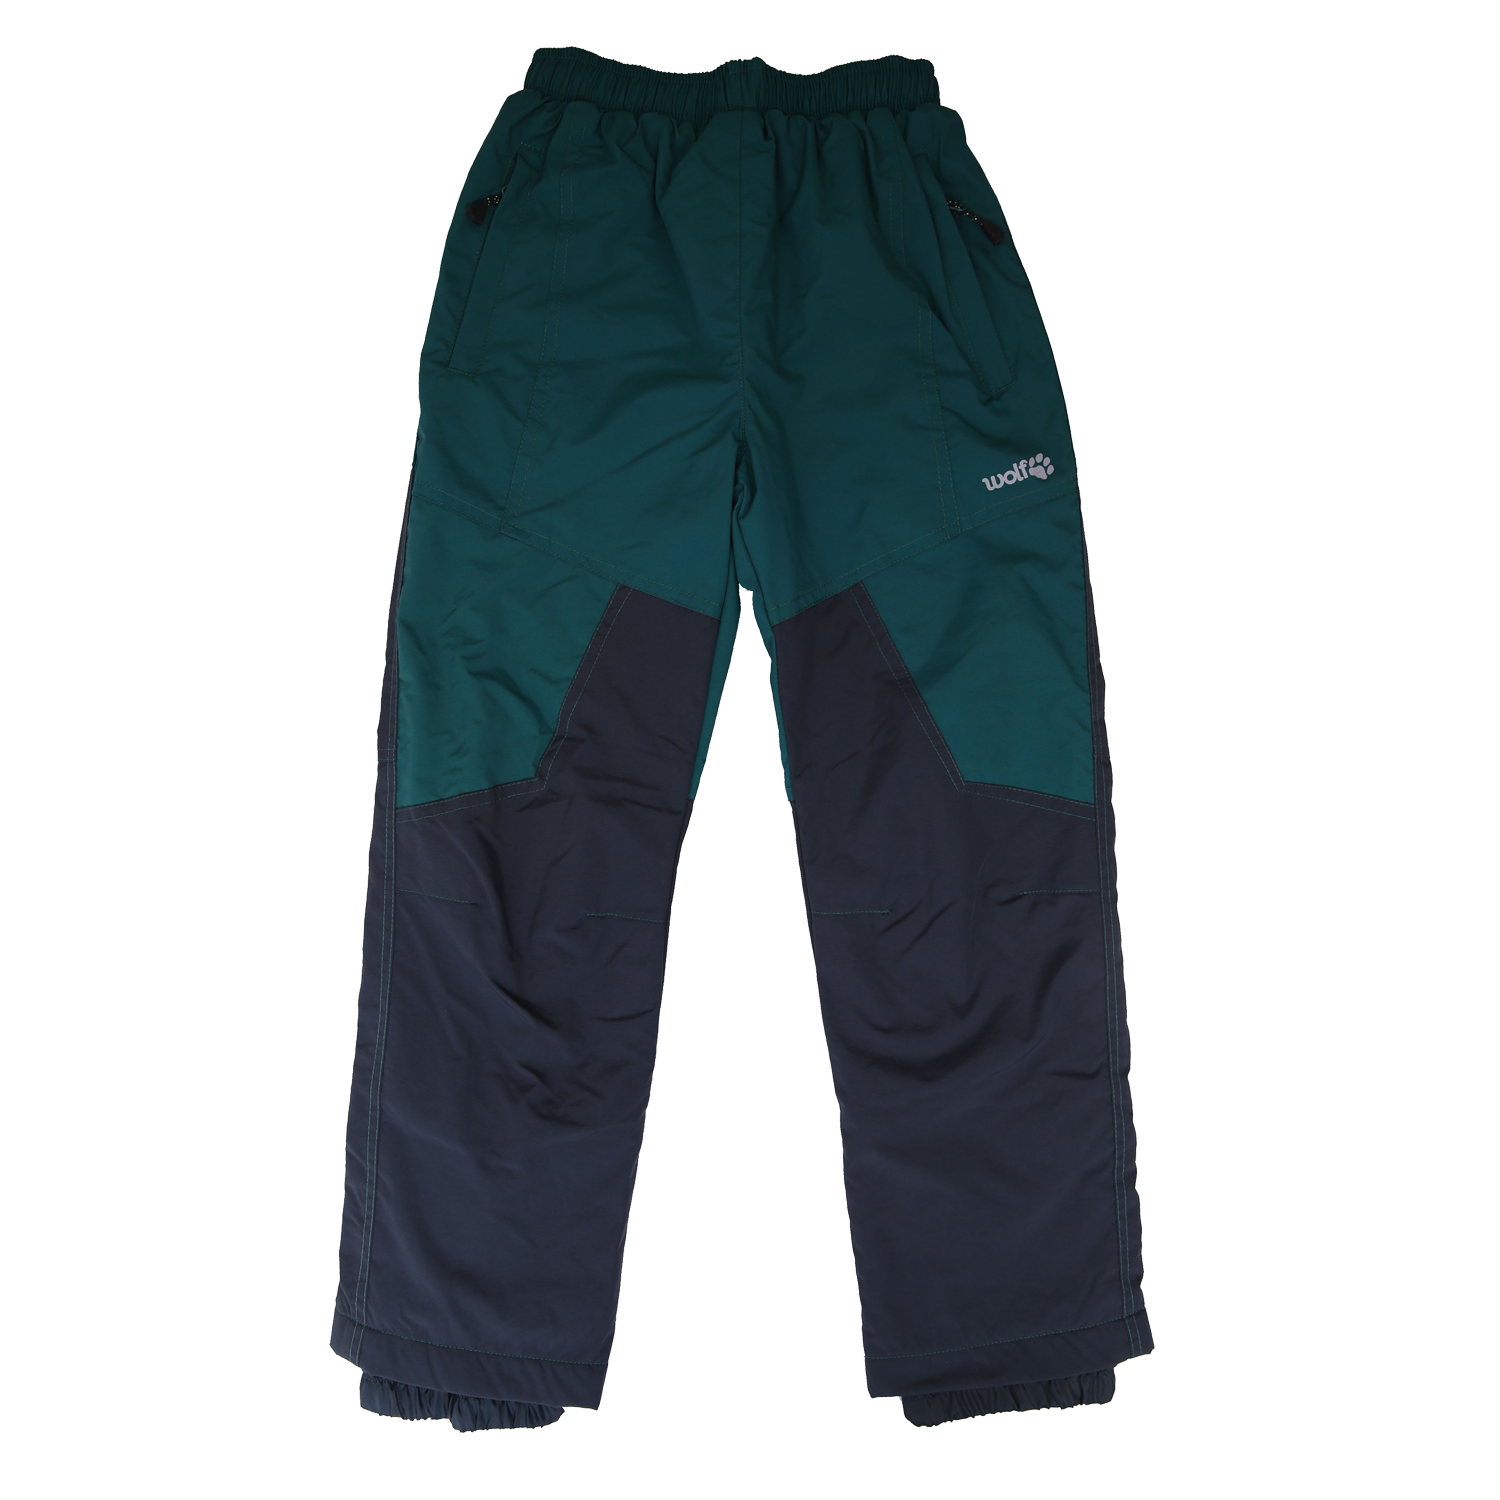 Chlapecké šusťákové kalhoty, zateplené - Wolf B2174, zelená/ šedá Barva: Šedá tmavě, Velikost: 104